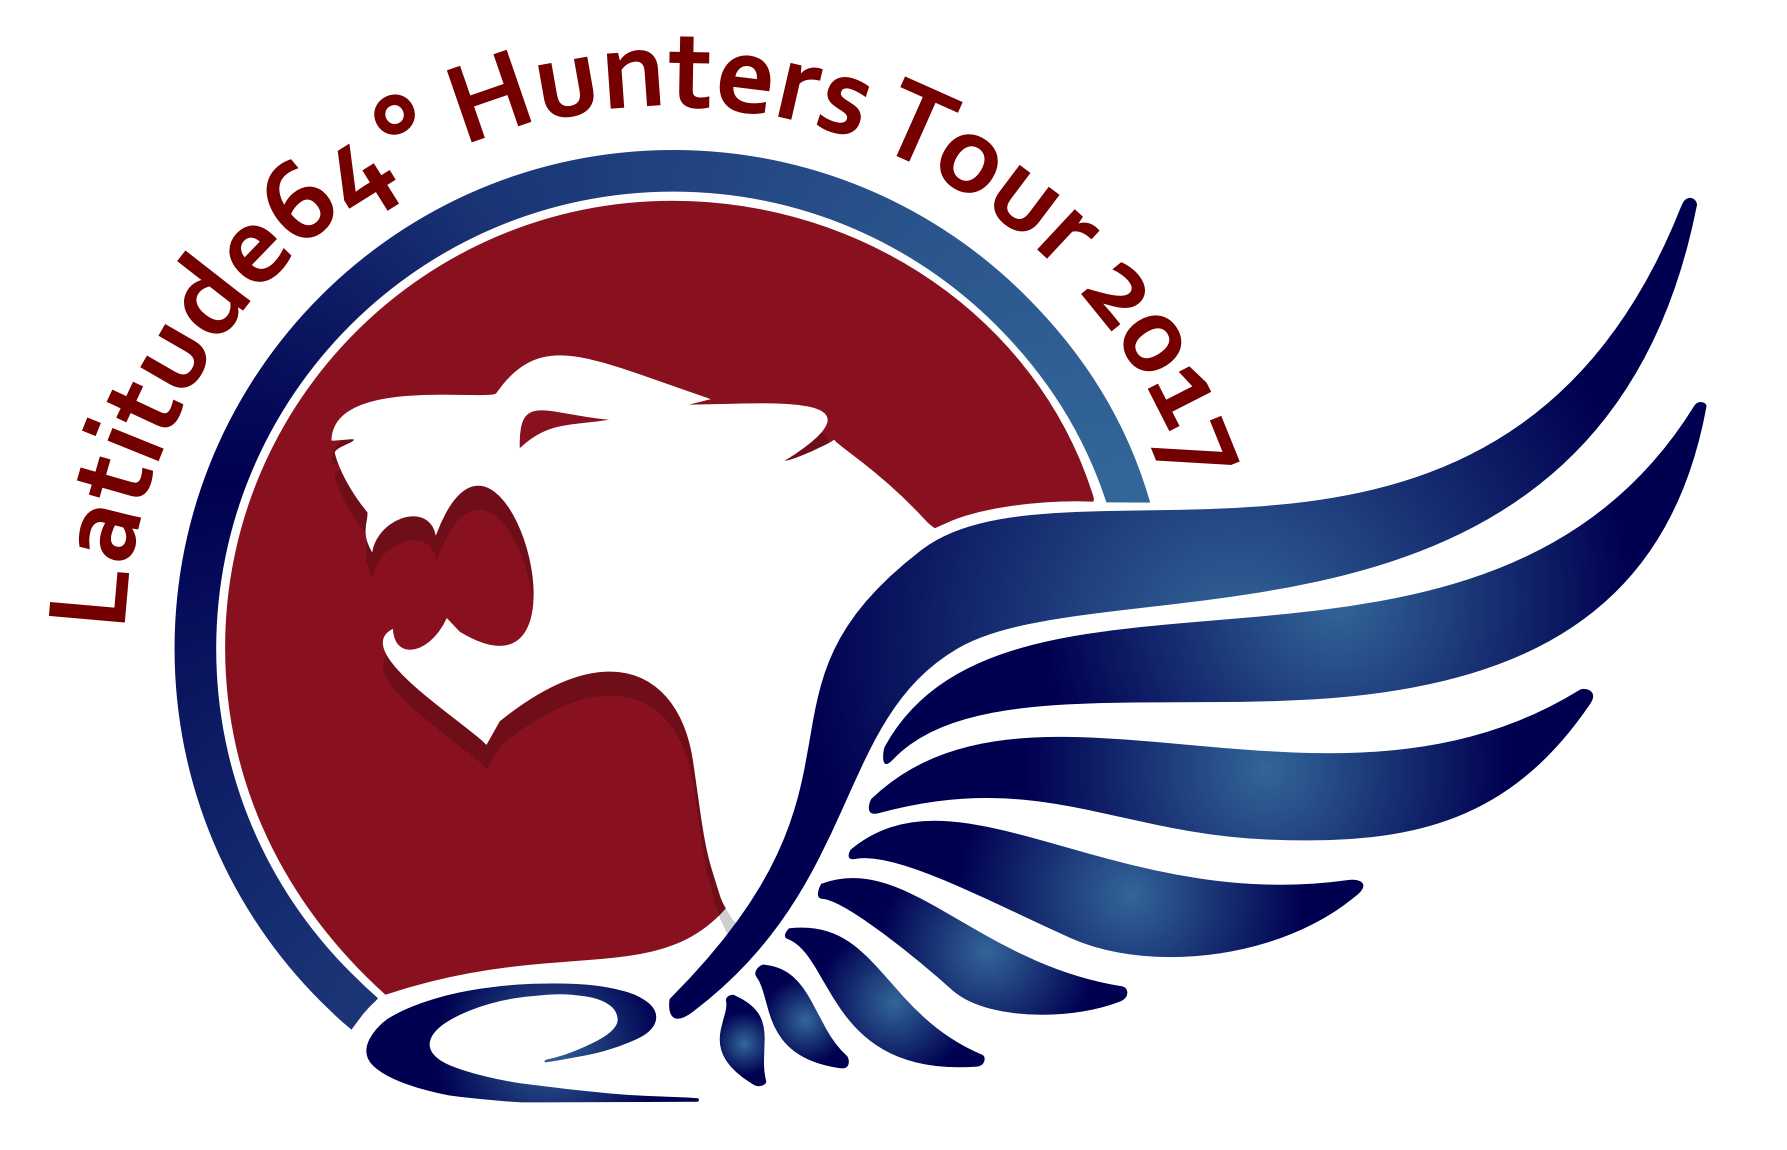 Představujeme nové logo pro Tour